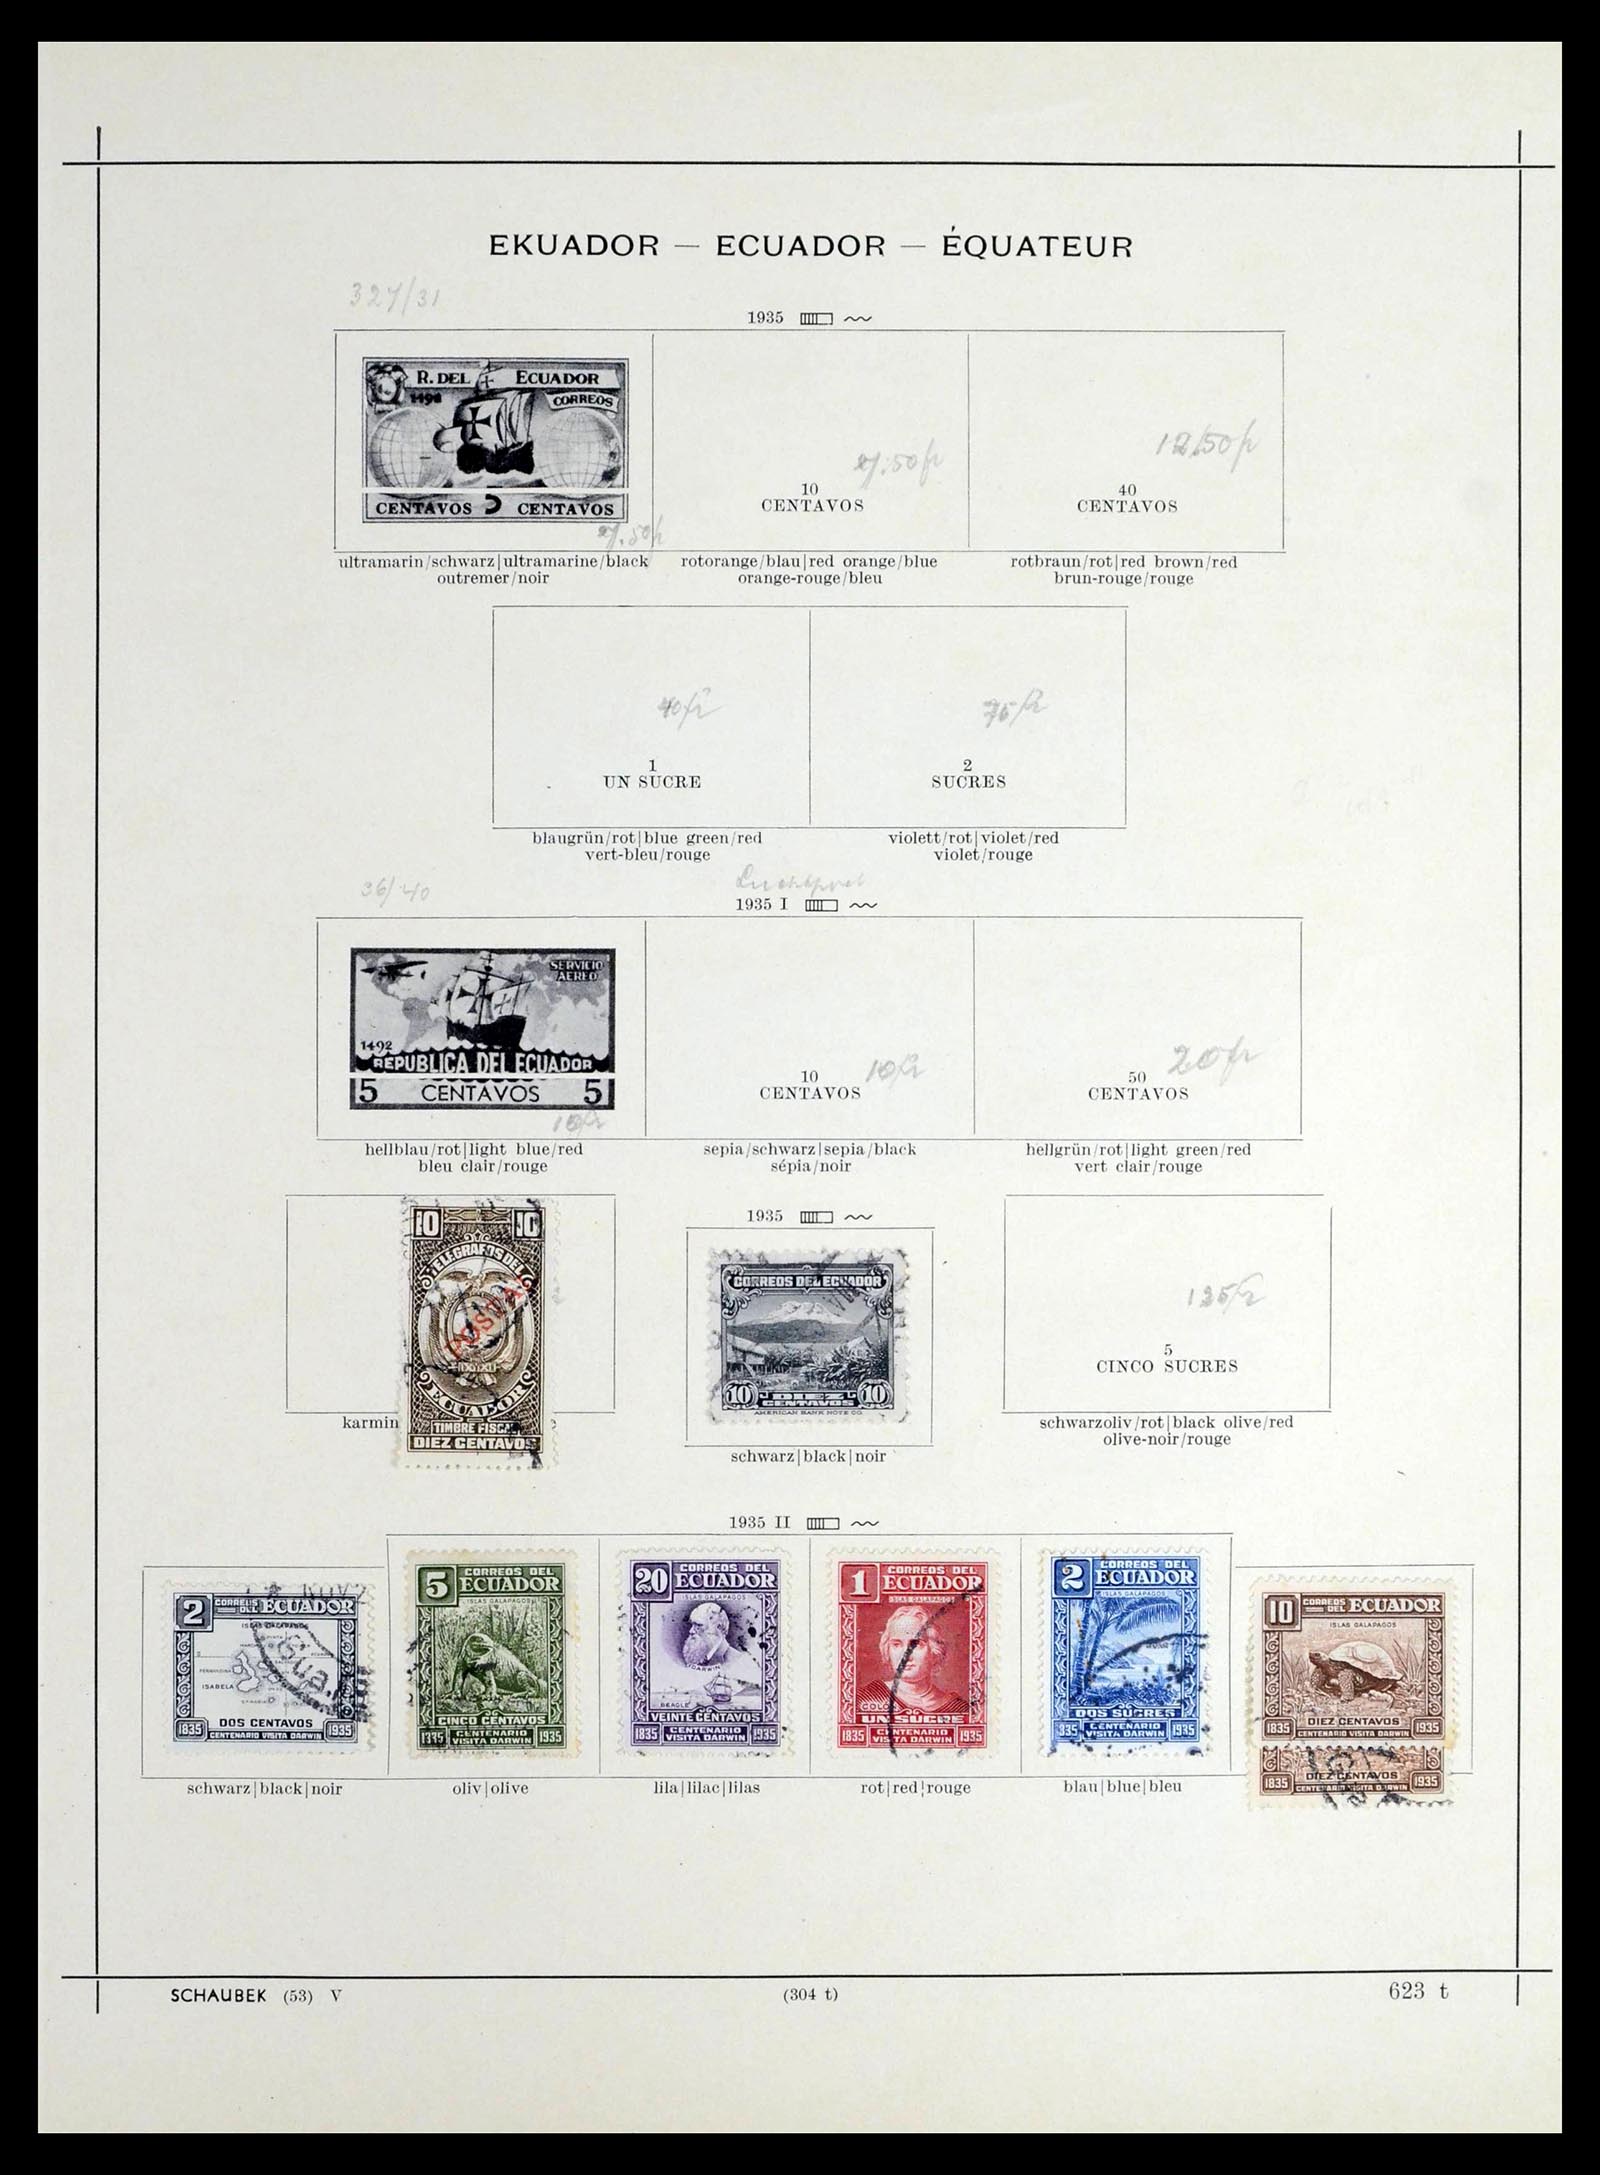 39456 0048 - Stamp collection 39456 Ecuador 1865-1960.